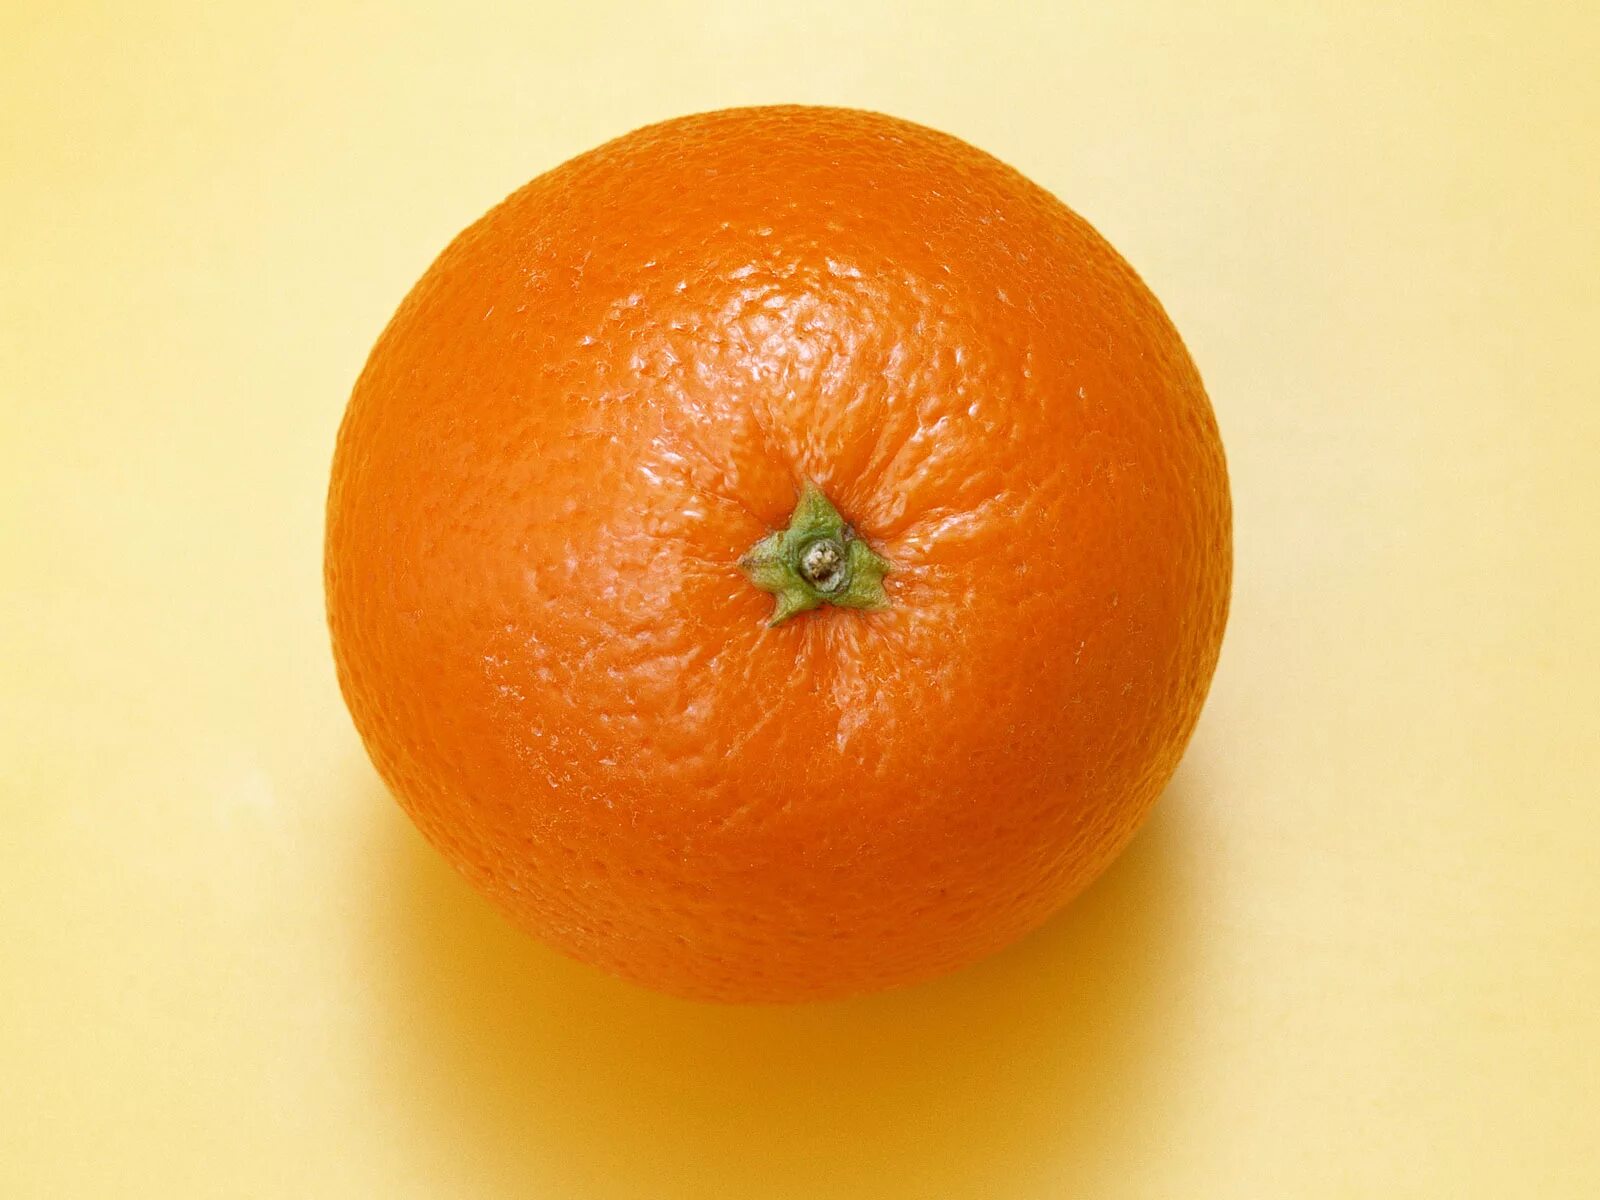 Orange choose. Померанец оранж. Apelsin 1:1. Апельсин сверху. Апельсин на белом фоне.